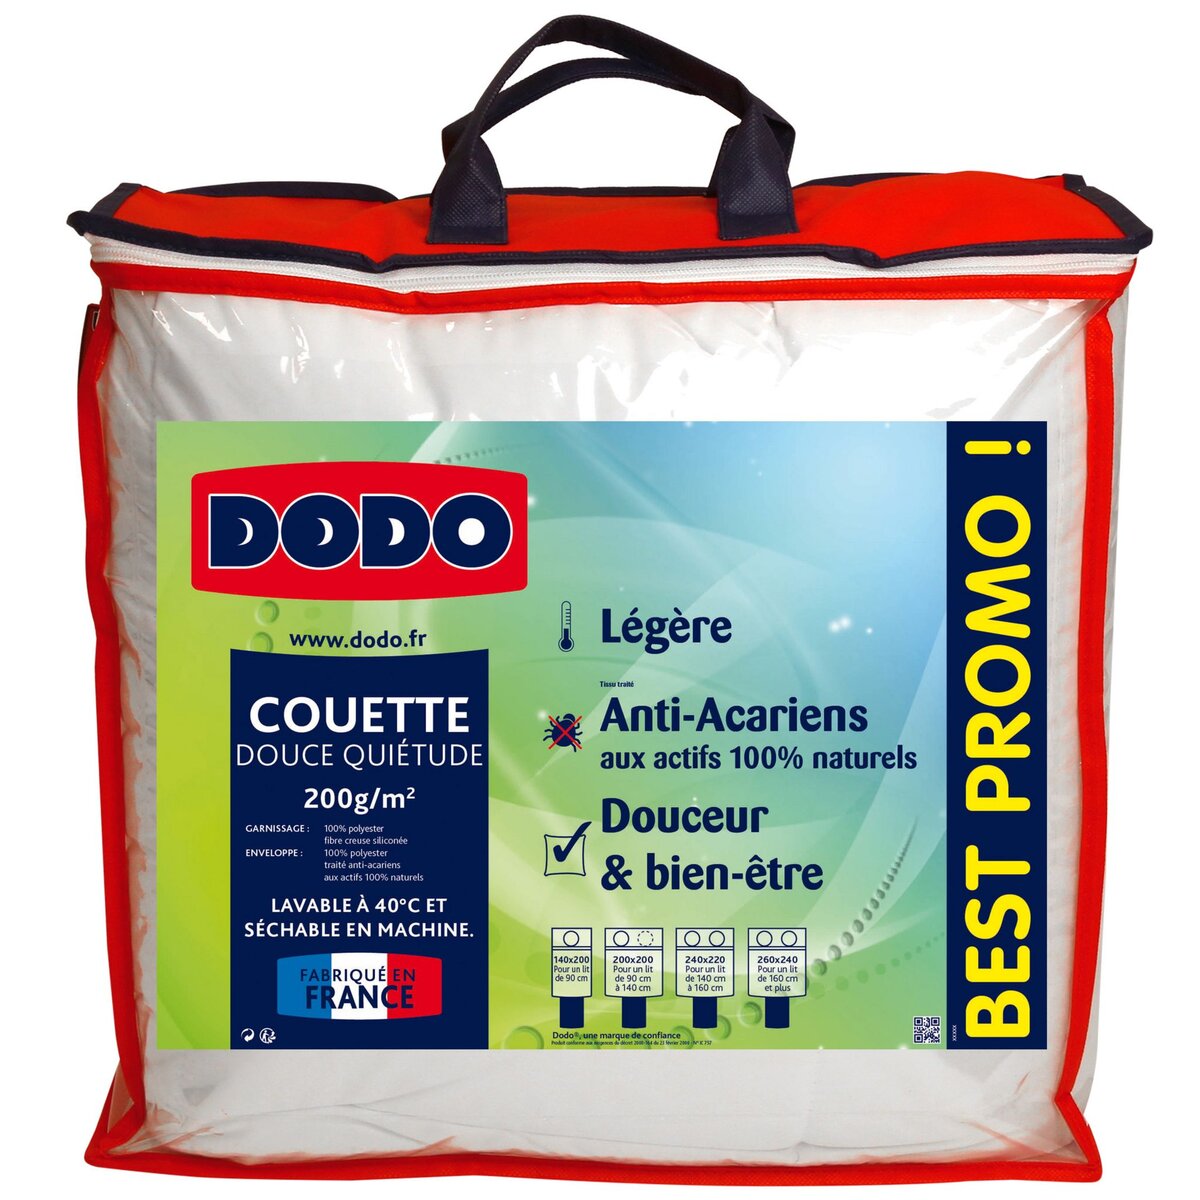 DODO Couette DODO légère anti-acariens 200g/m² DOUCE QUIETUDE